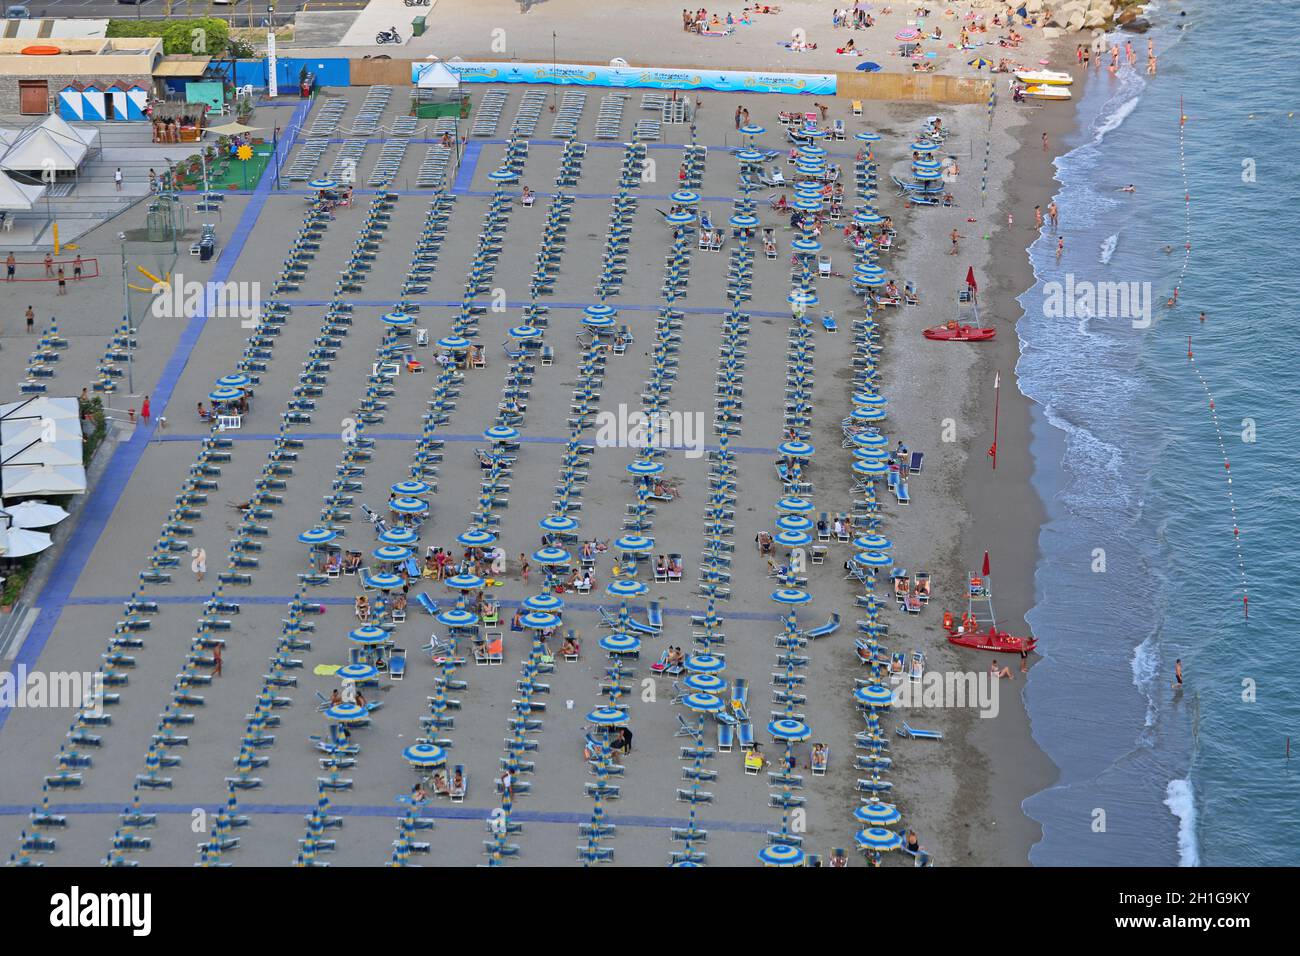 Vietri Sul Mare, Italia - 27 Giugno 2014: pomeriggio presso la grande spiaggia sabbiosa di Vietri Sul Mare vicino a Salerno, Italia. Foto Stock